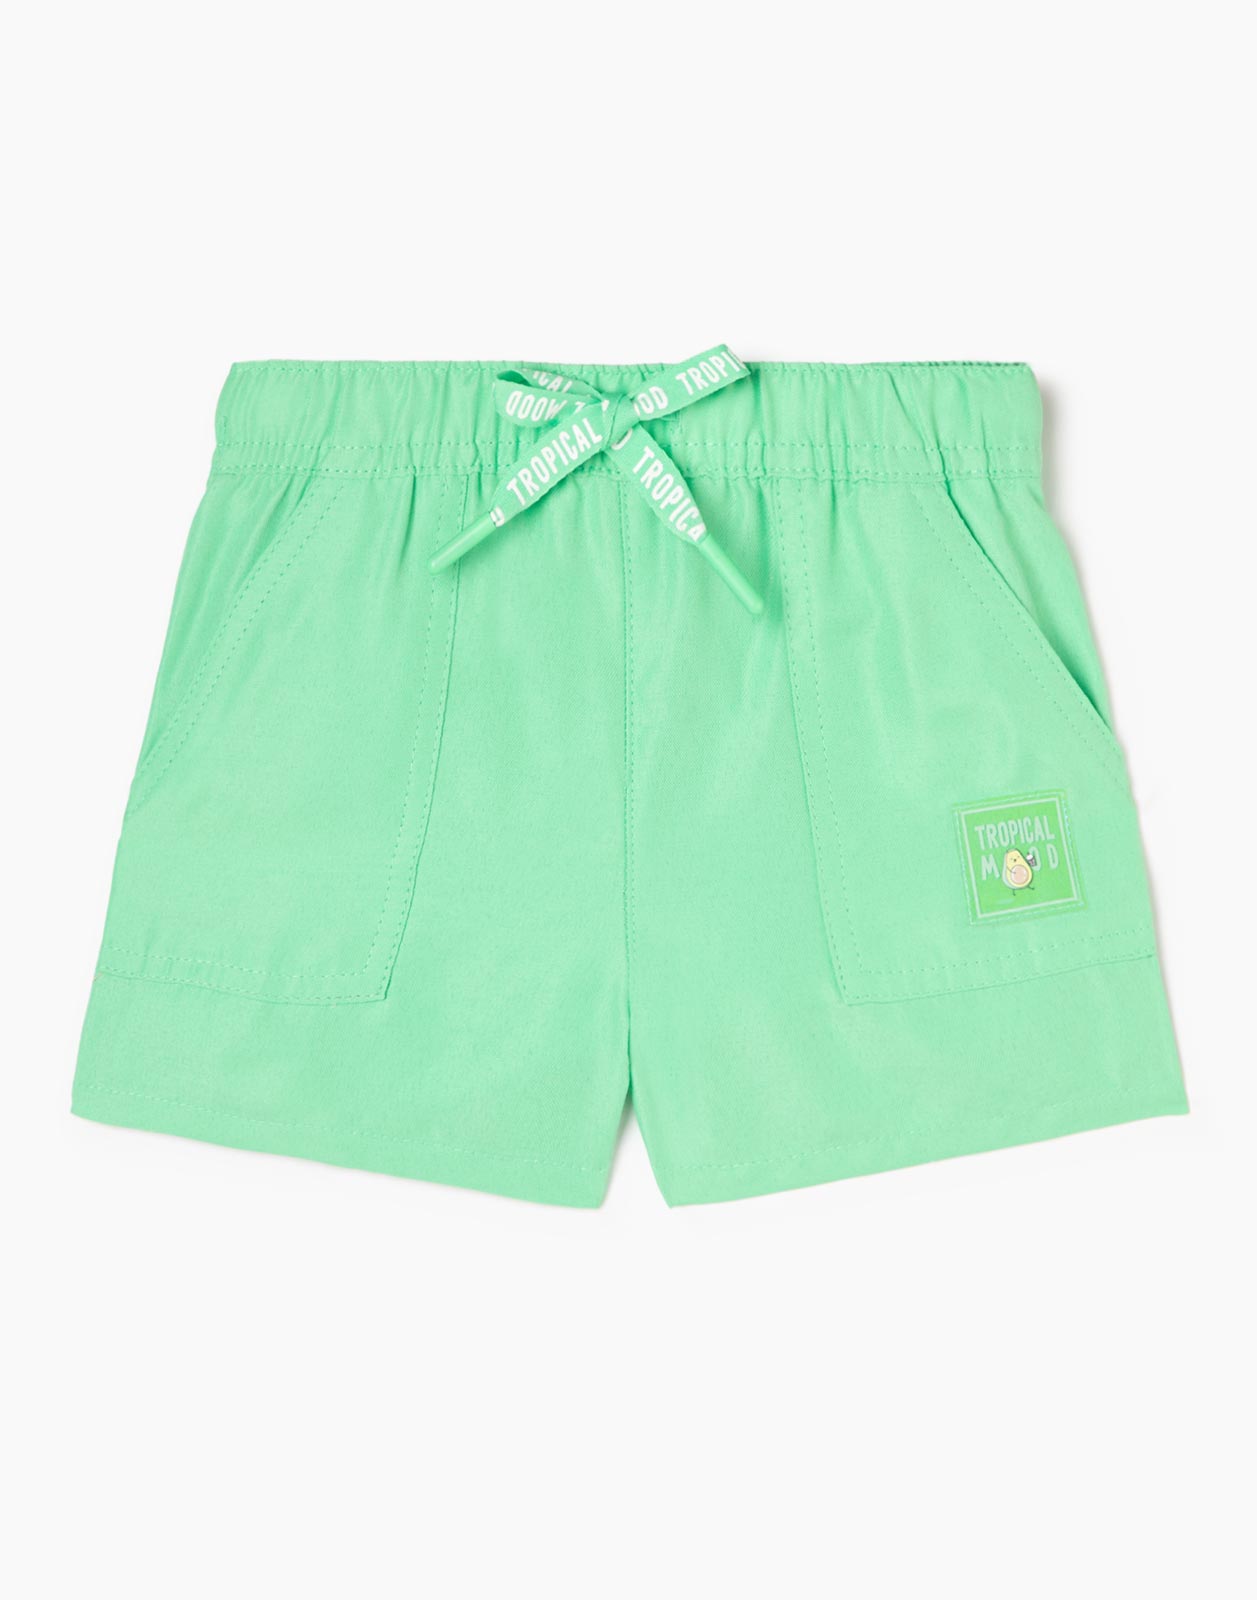 Зелёные шорты с нашивкой Tropical mood для девочки р.92